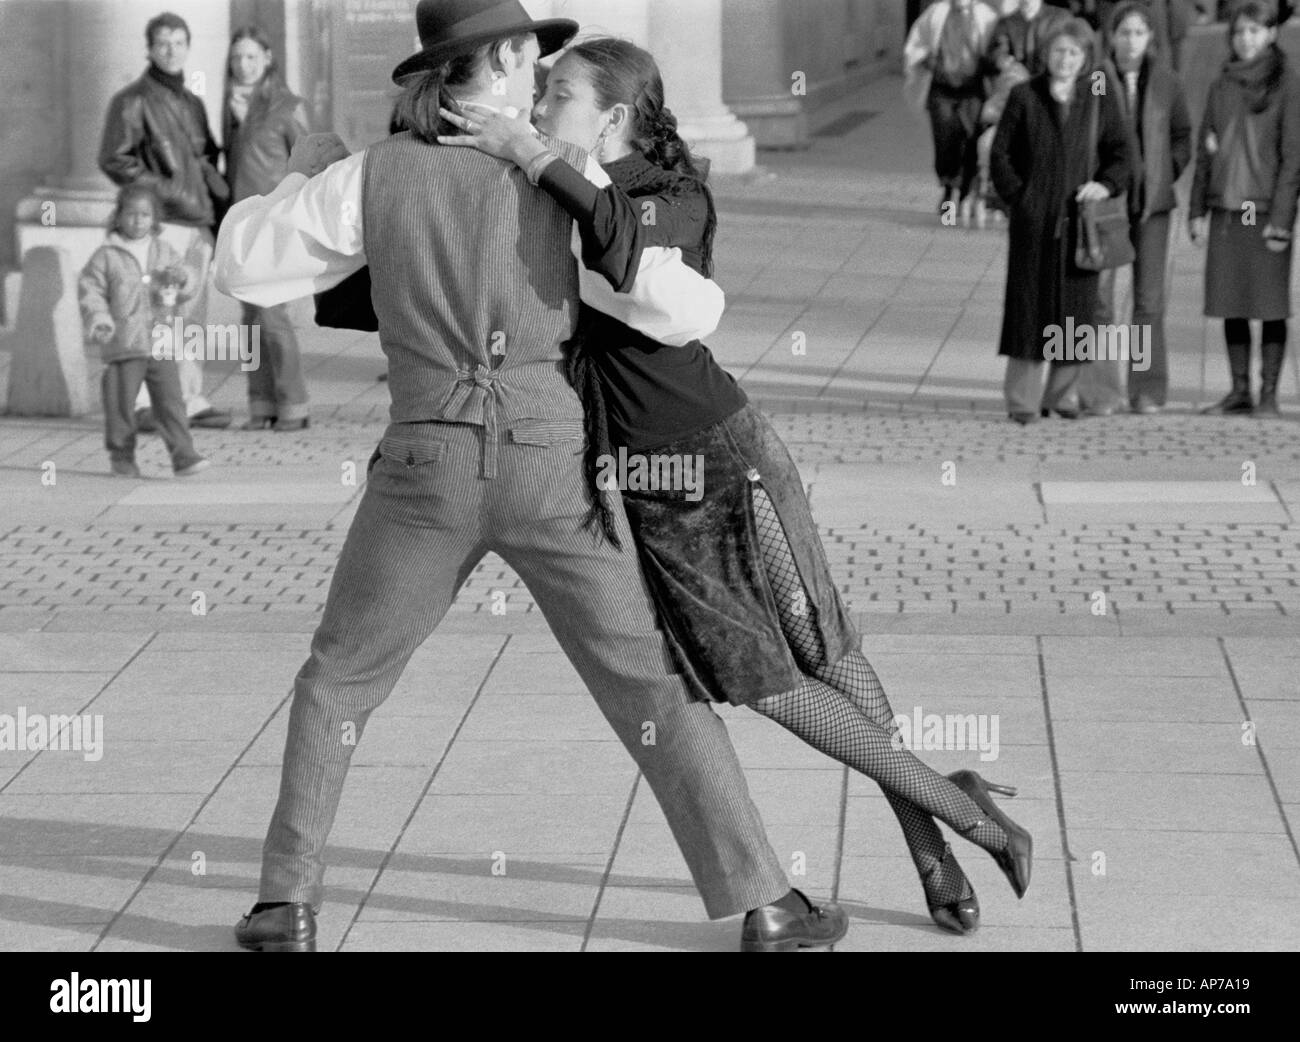 Tango Dancers in the Plaza de Oriente Square, Madrid, Spain Stock Photo